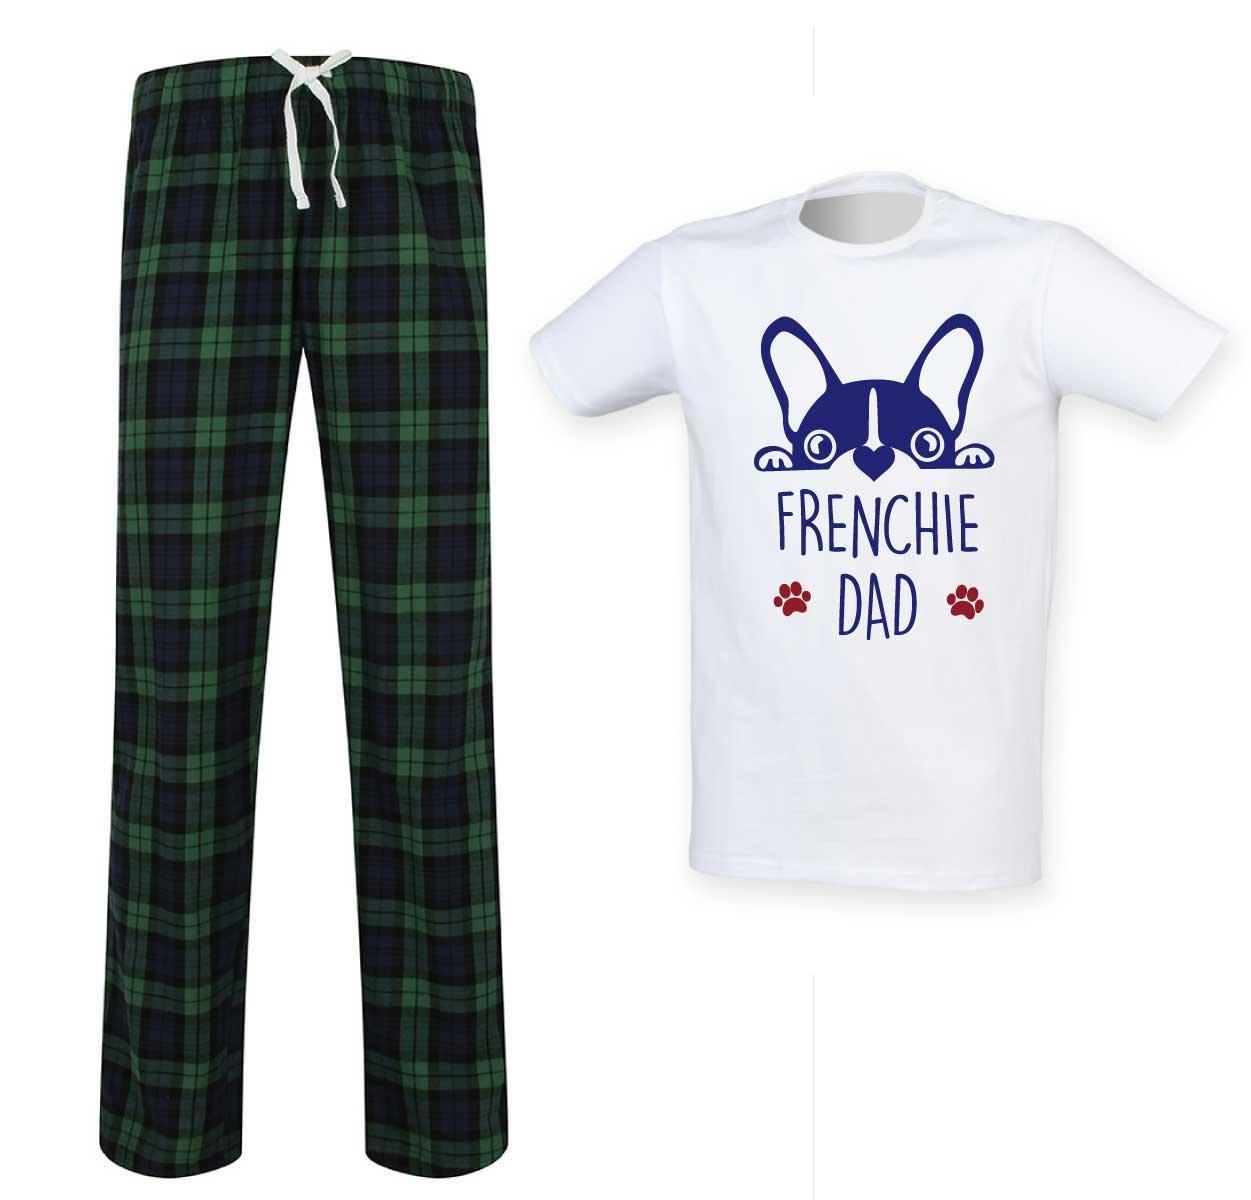 Frenchie Dad Tartan Pyjama Set